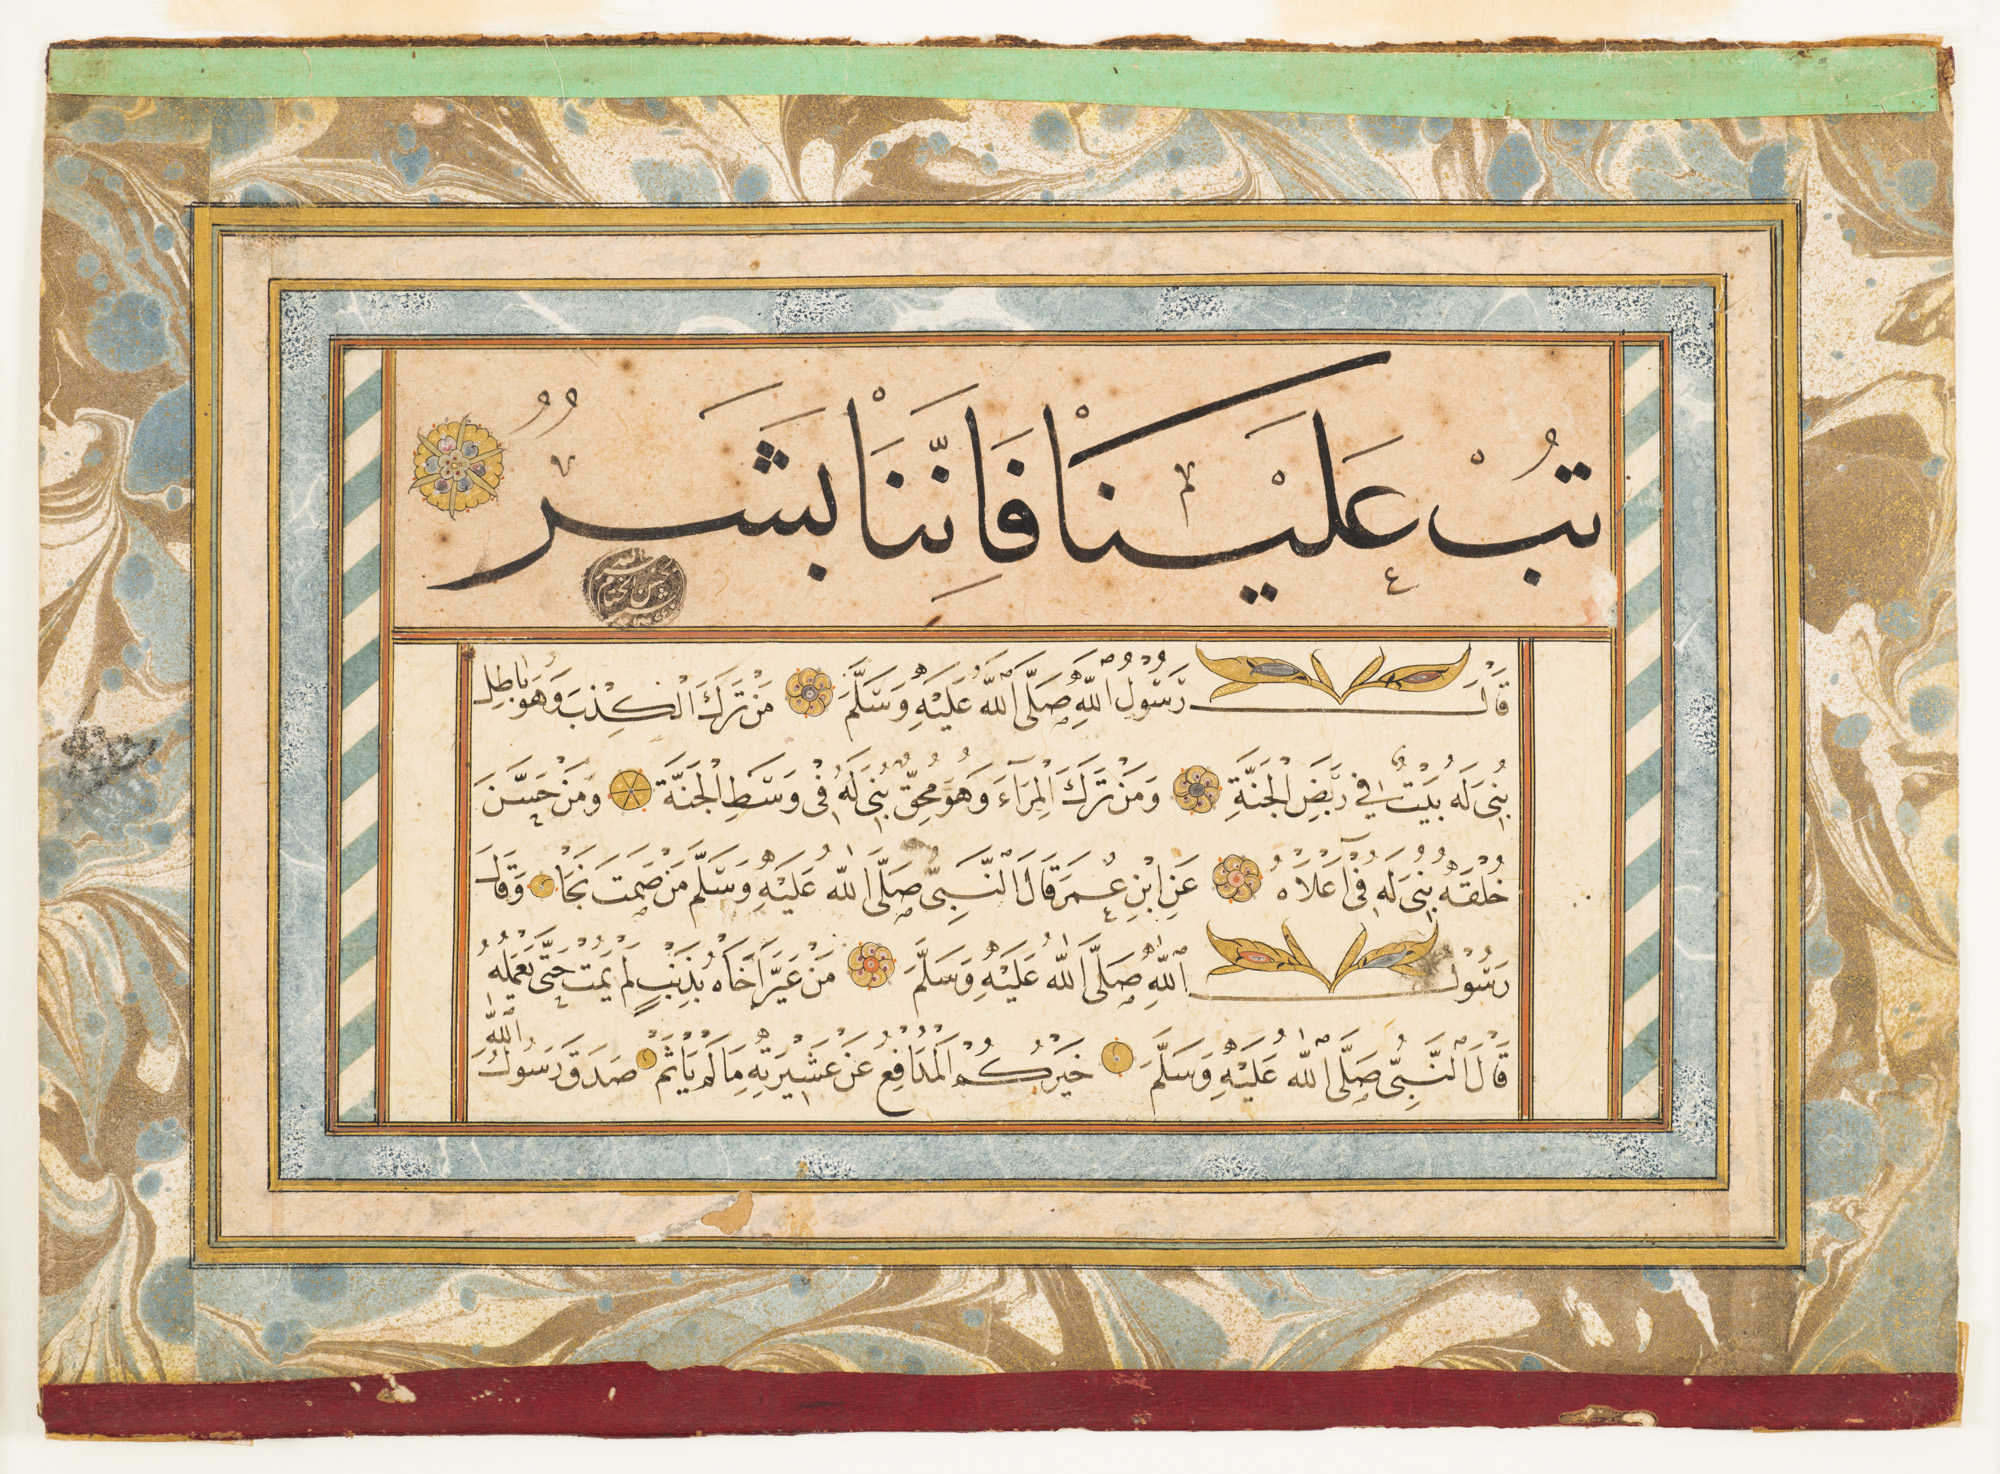 مجموعه خوشنویسی از احادیث حضرت محمد by Unknown Artist - قرن هجده 